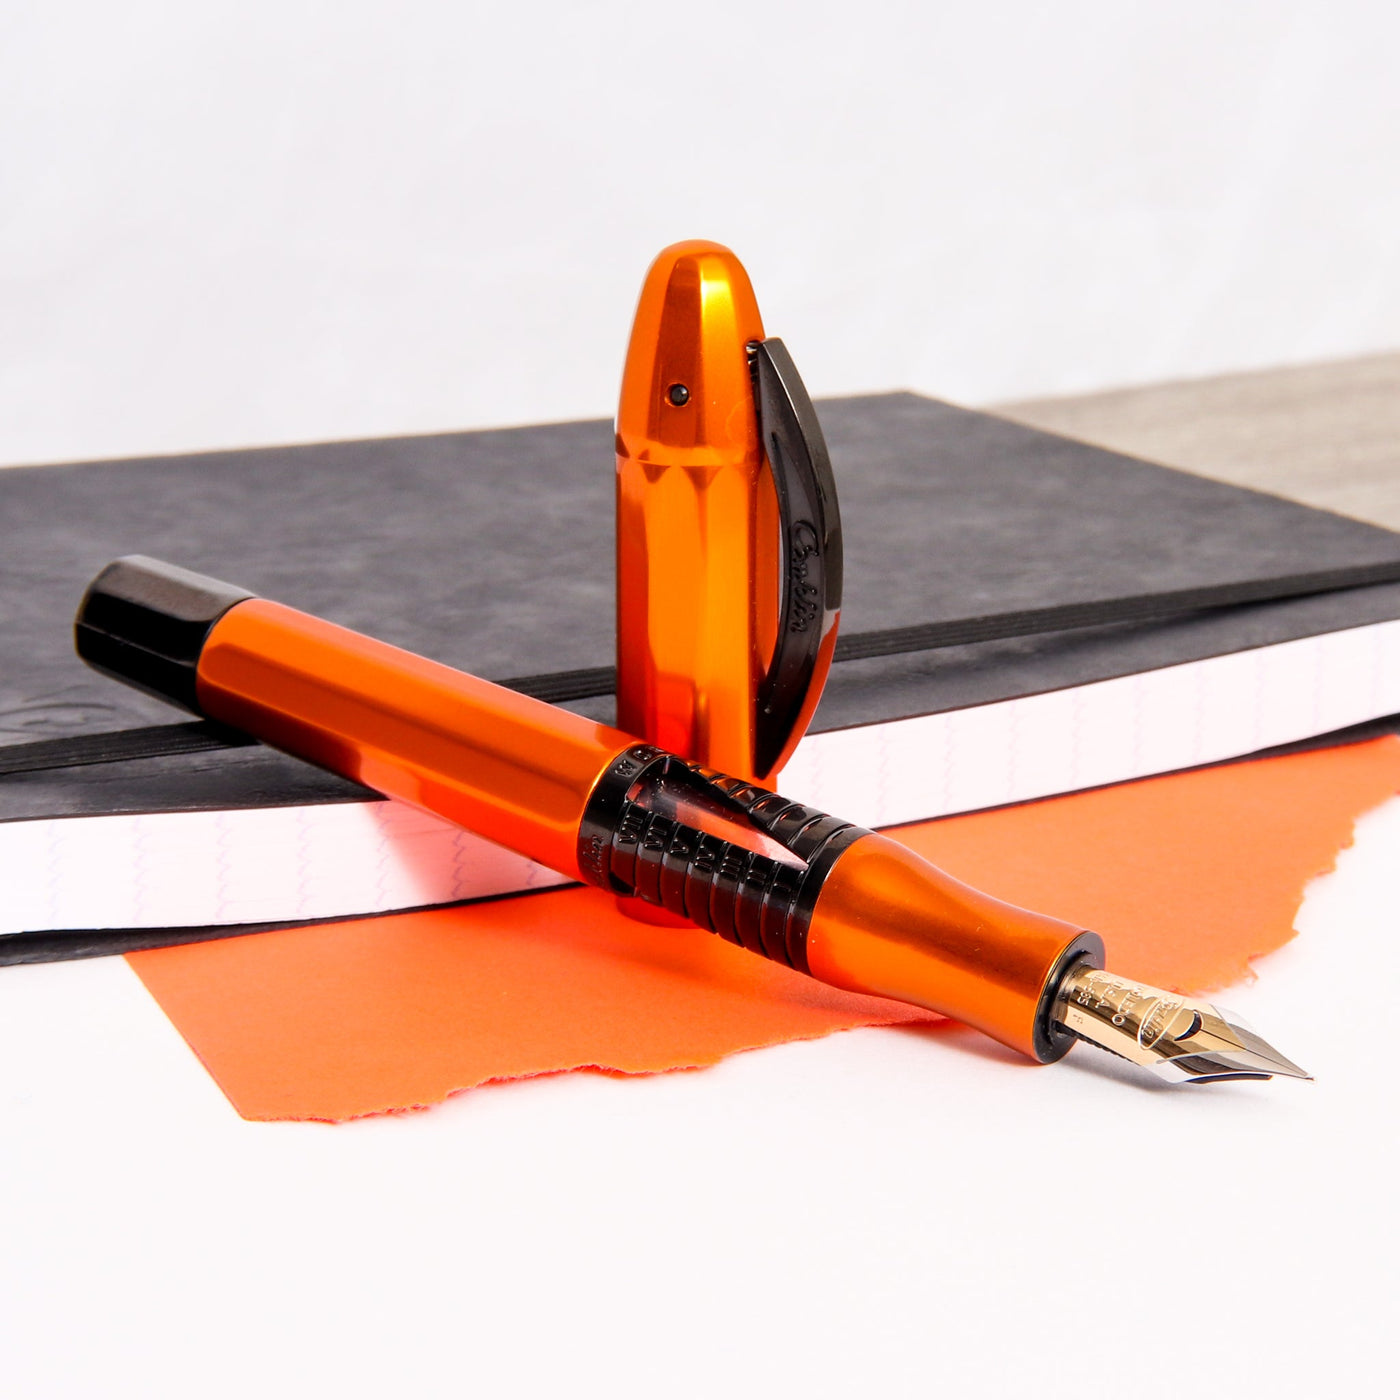 Conklin-Nozac-Classic-125th-Anniversary-Orange-Fountain-Pen-Uncapped